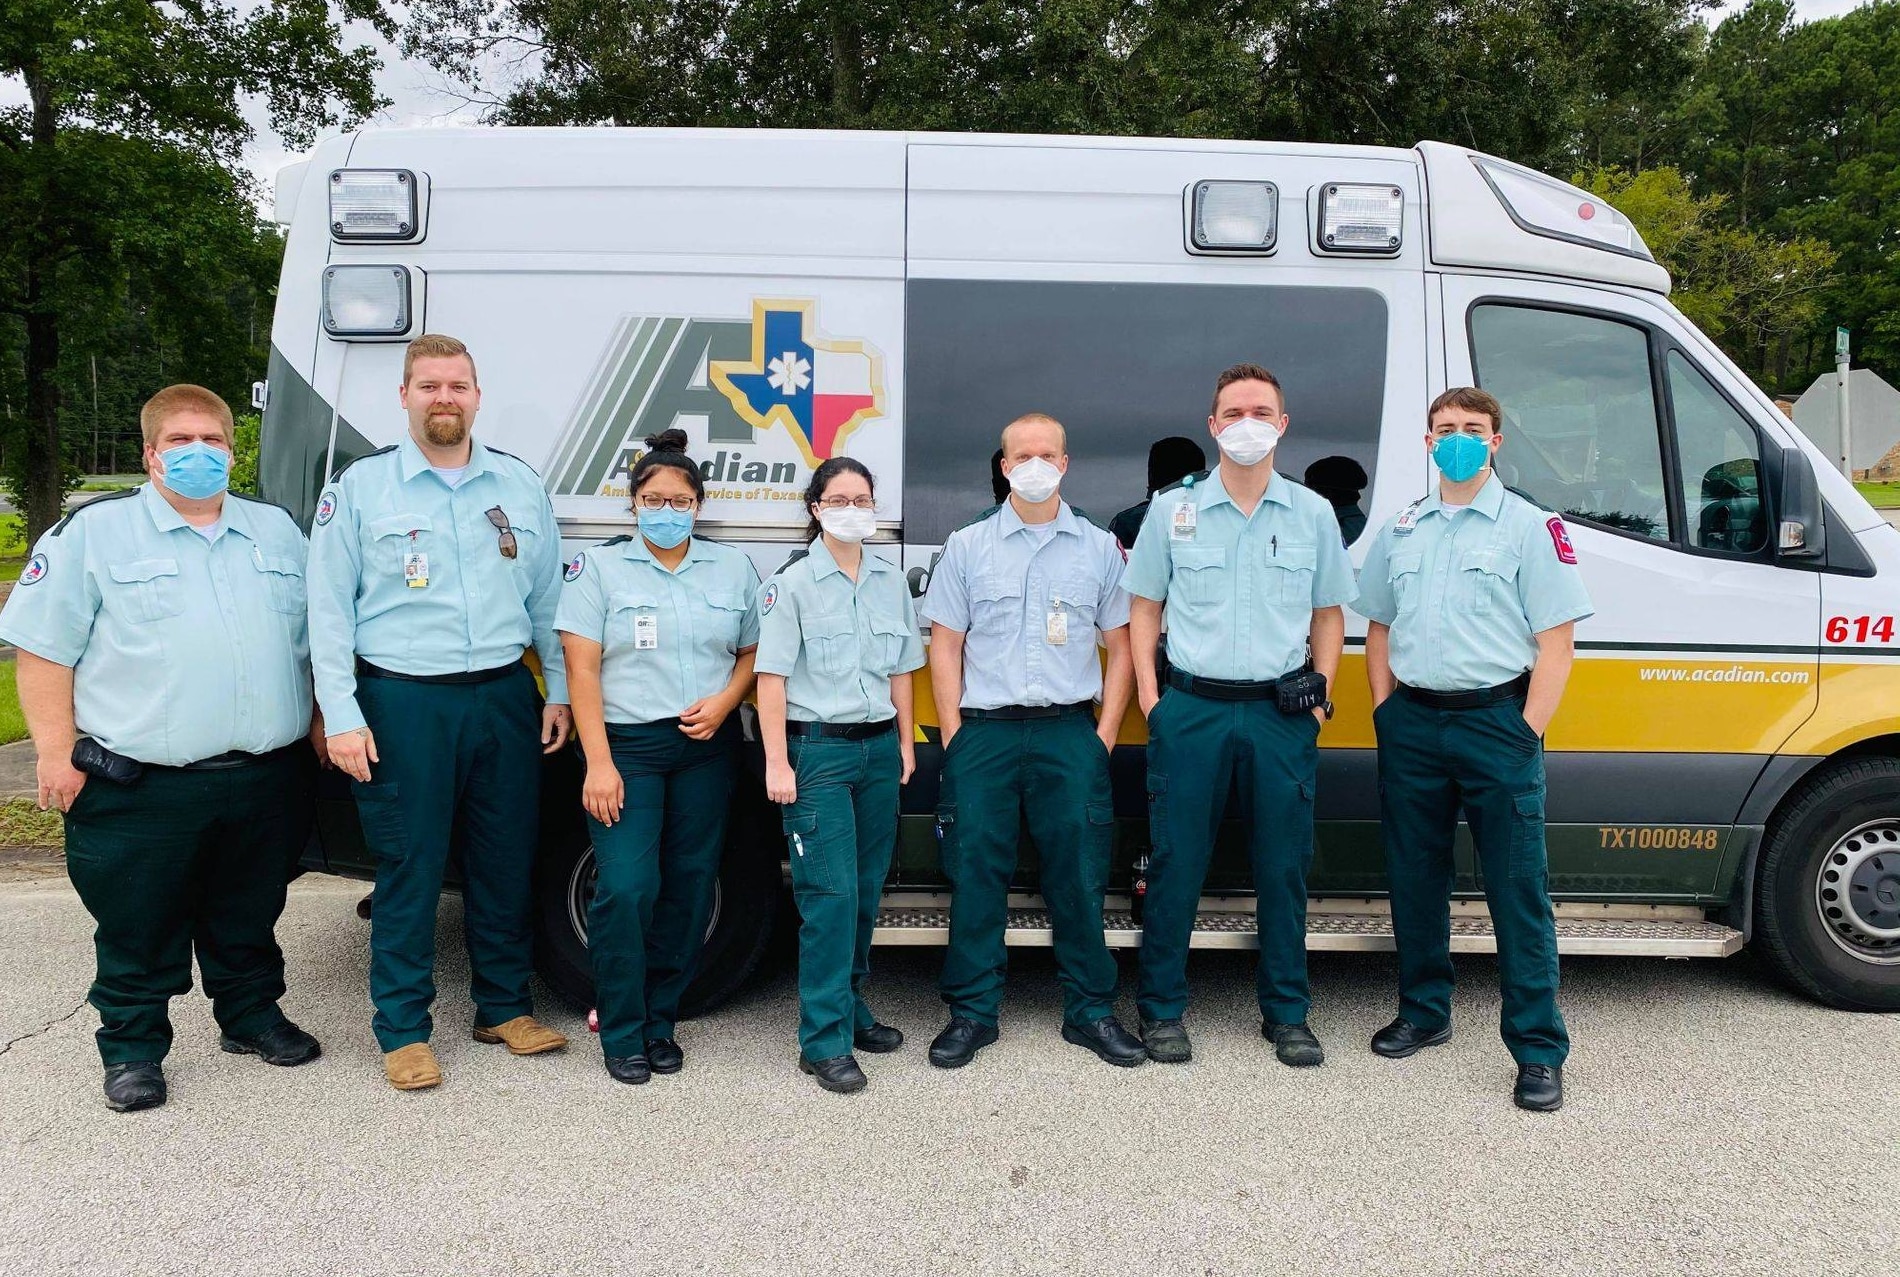 Texas medic crew